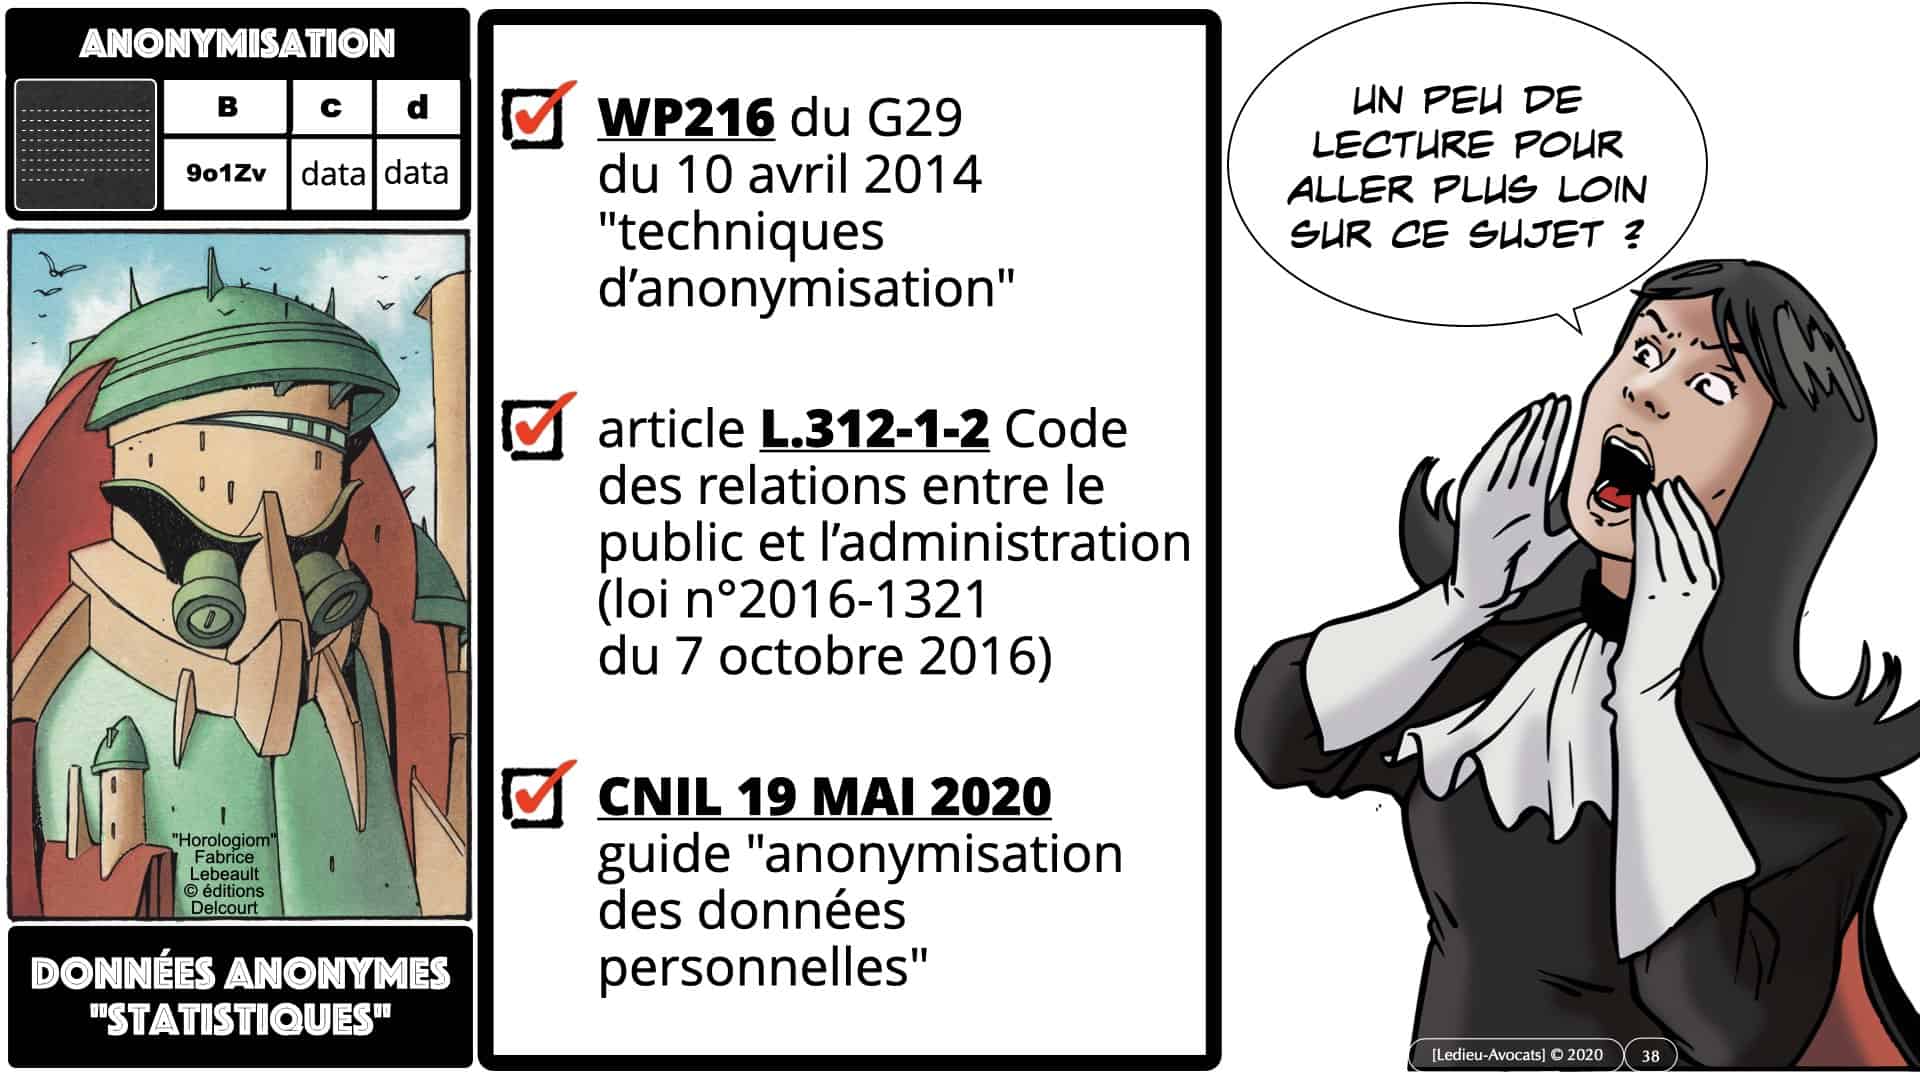 314 PRO BTP © Ledieu-avocat 03-12-2020.038